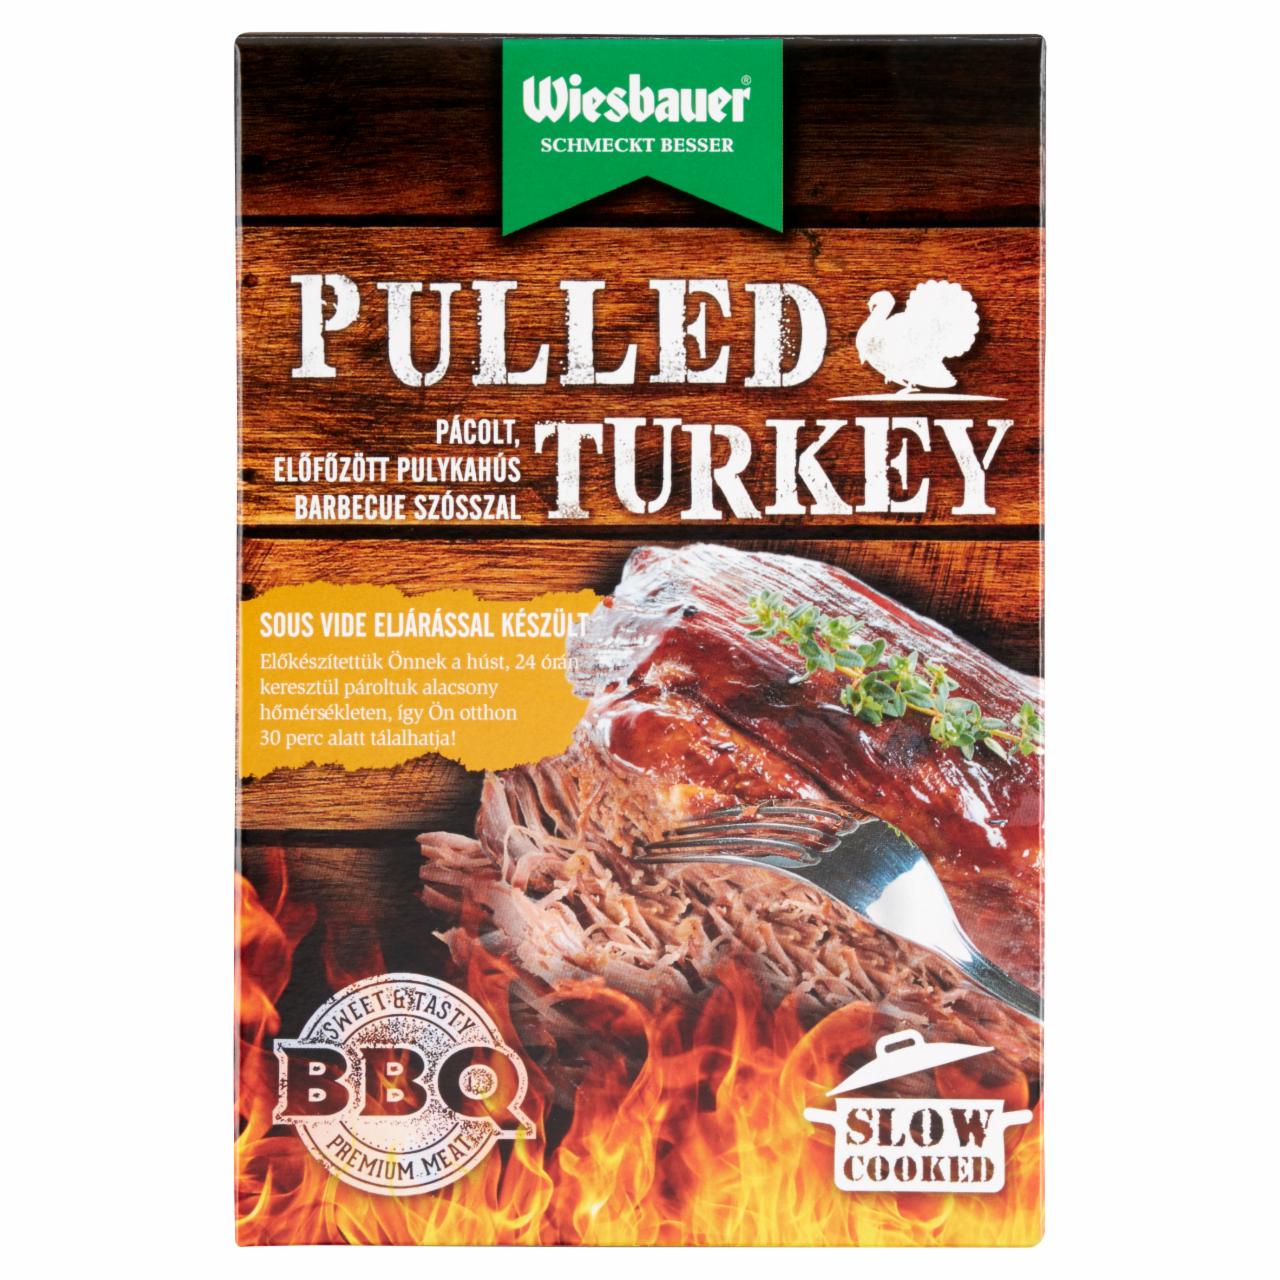 Képek - Wiesbauer Pulled Turkey pácolt, előfőzött pulykahús barbecue szósszal 400 g